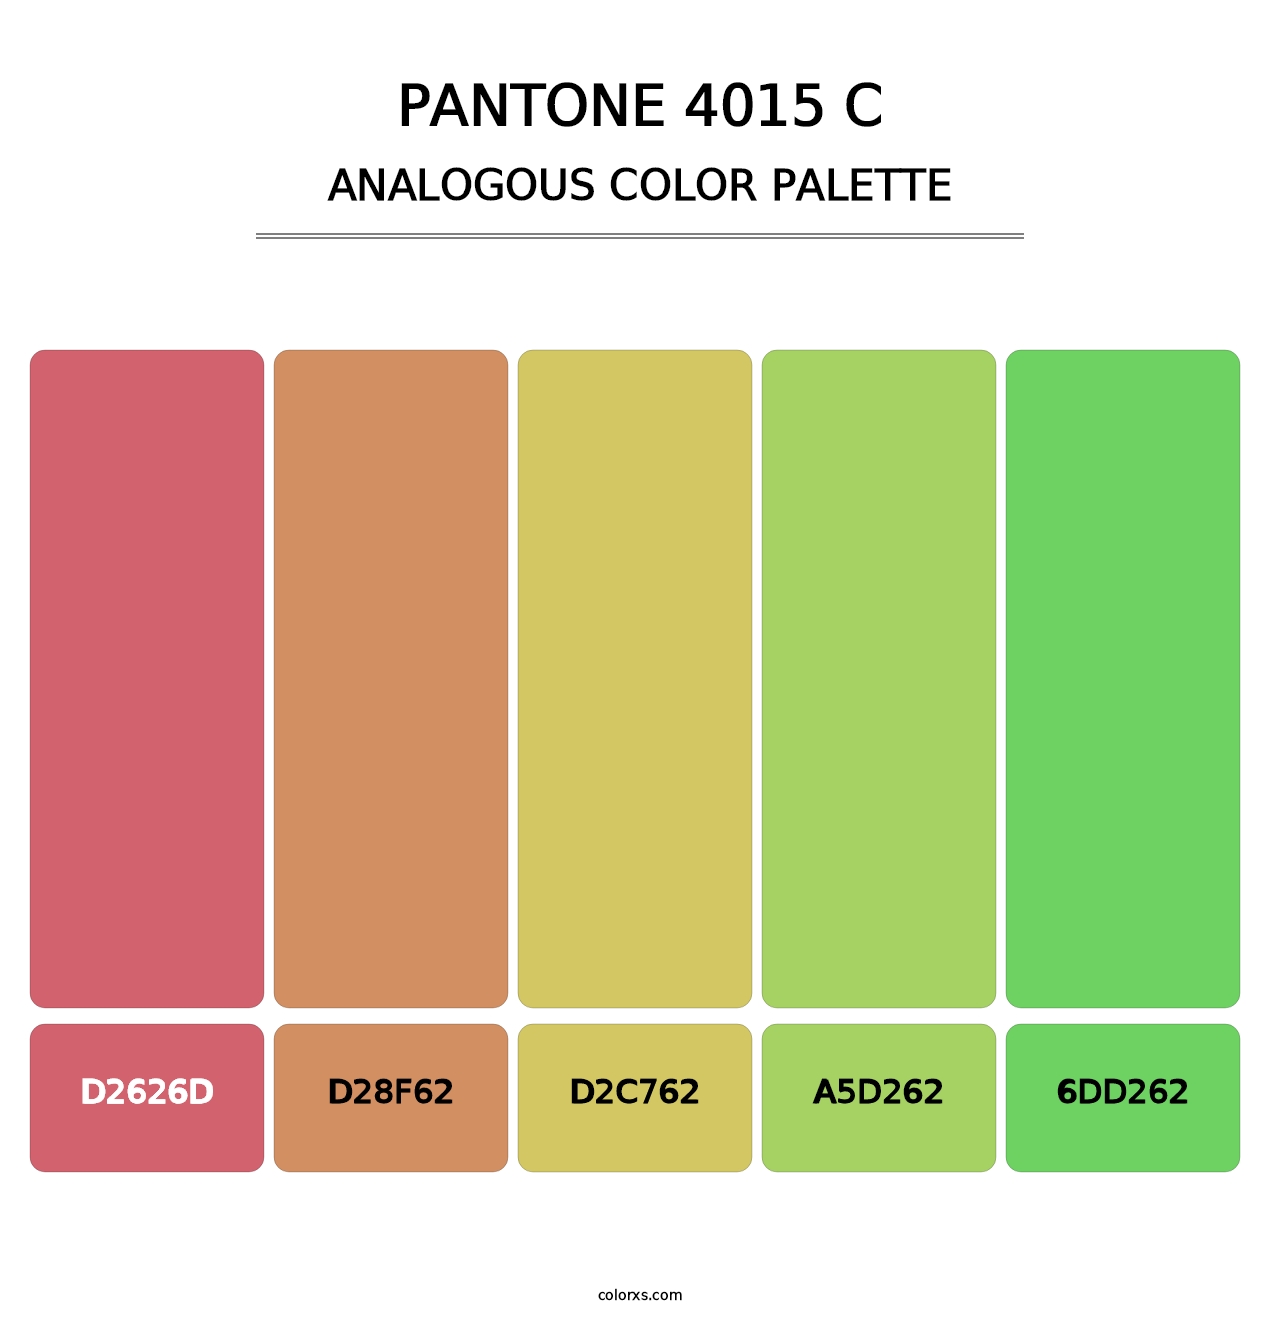 PANTONE 4015 C - Analogous Color Palette